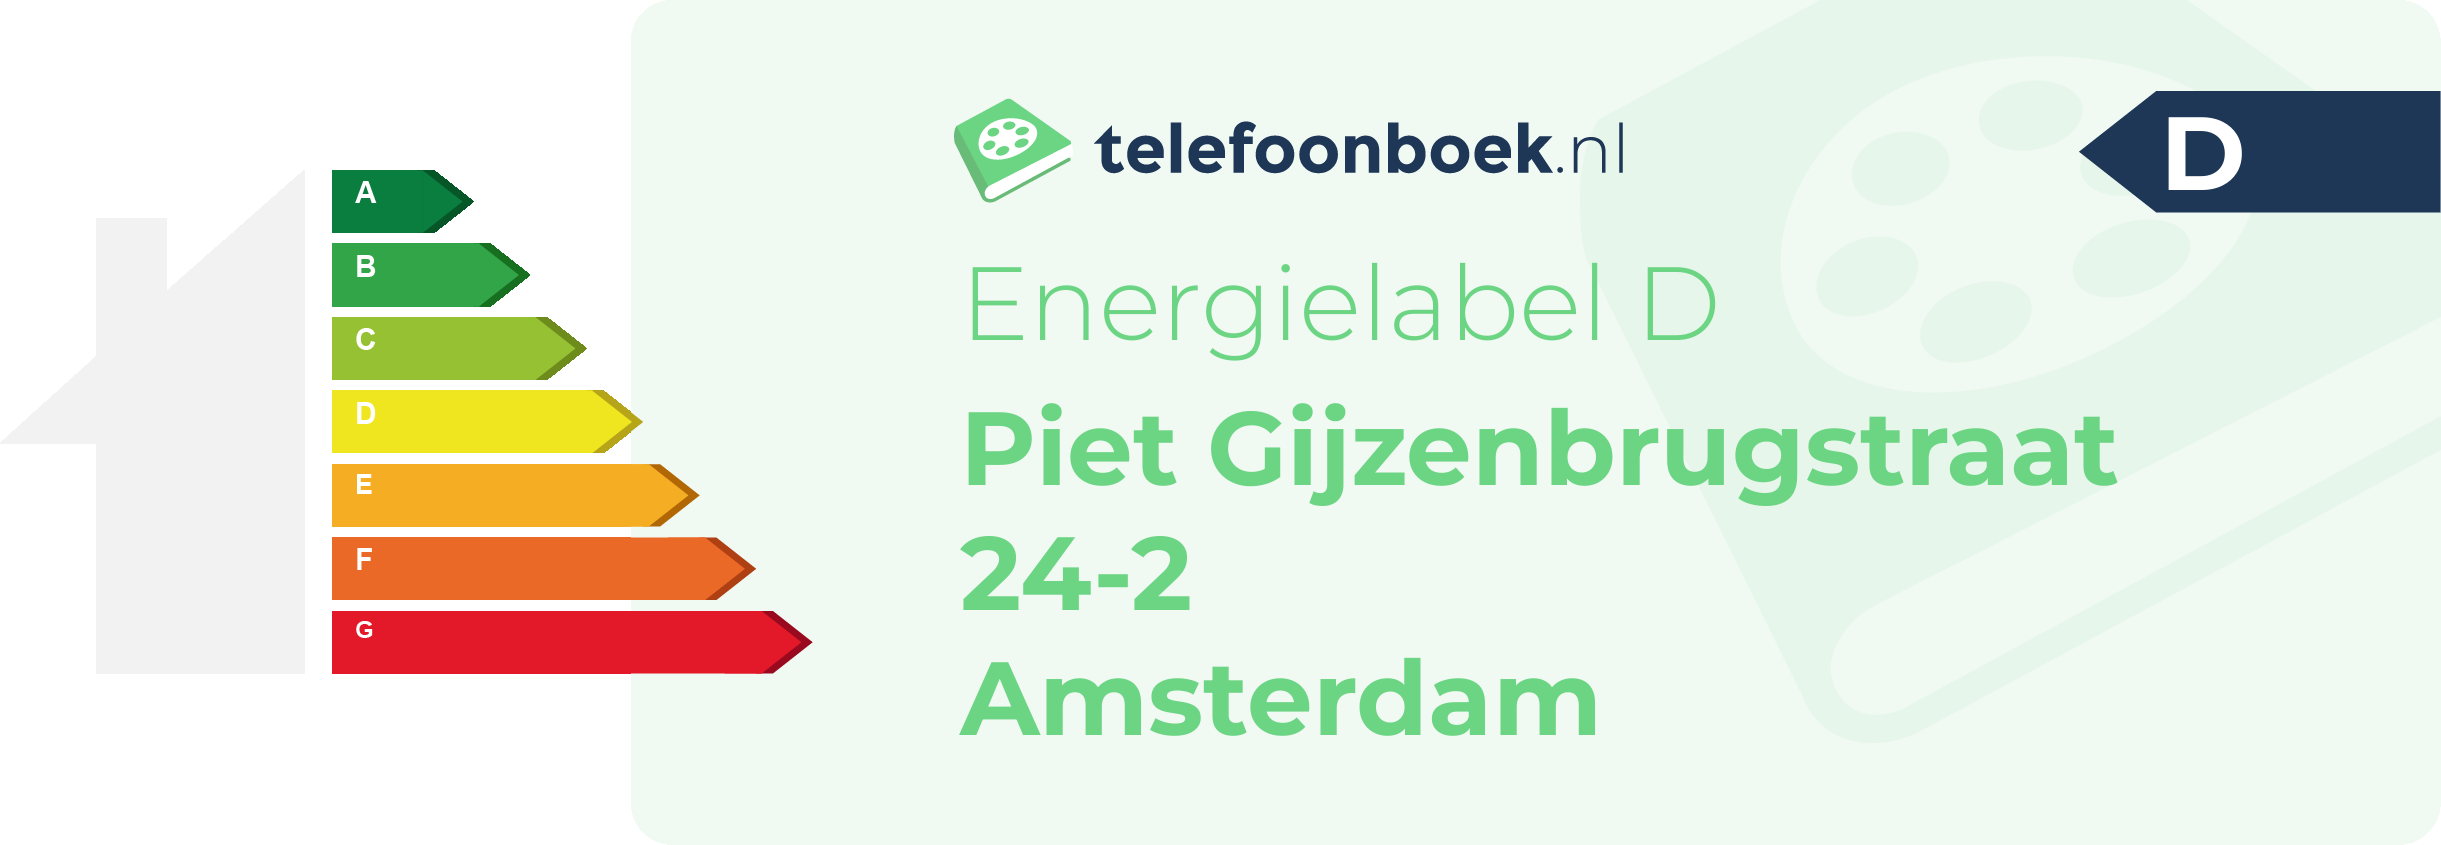 Energielabel Piet Gijzenbrugstraat 24-2 Amsterdam